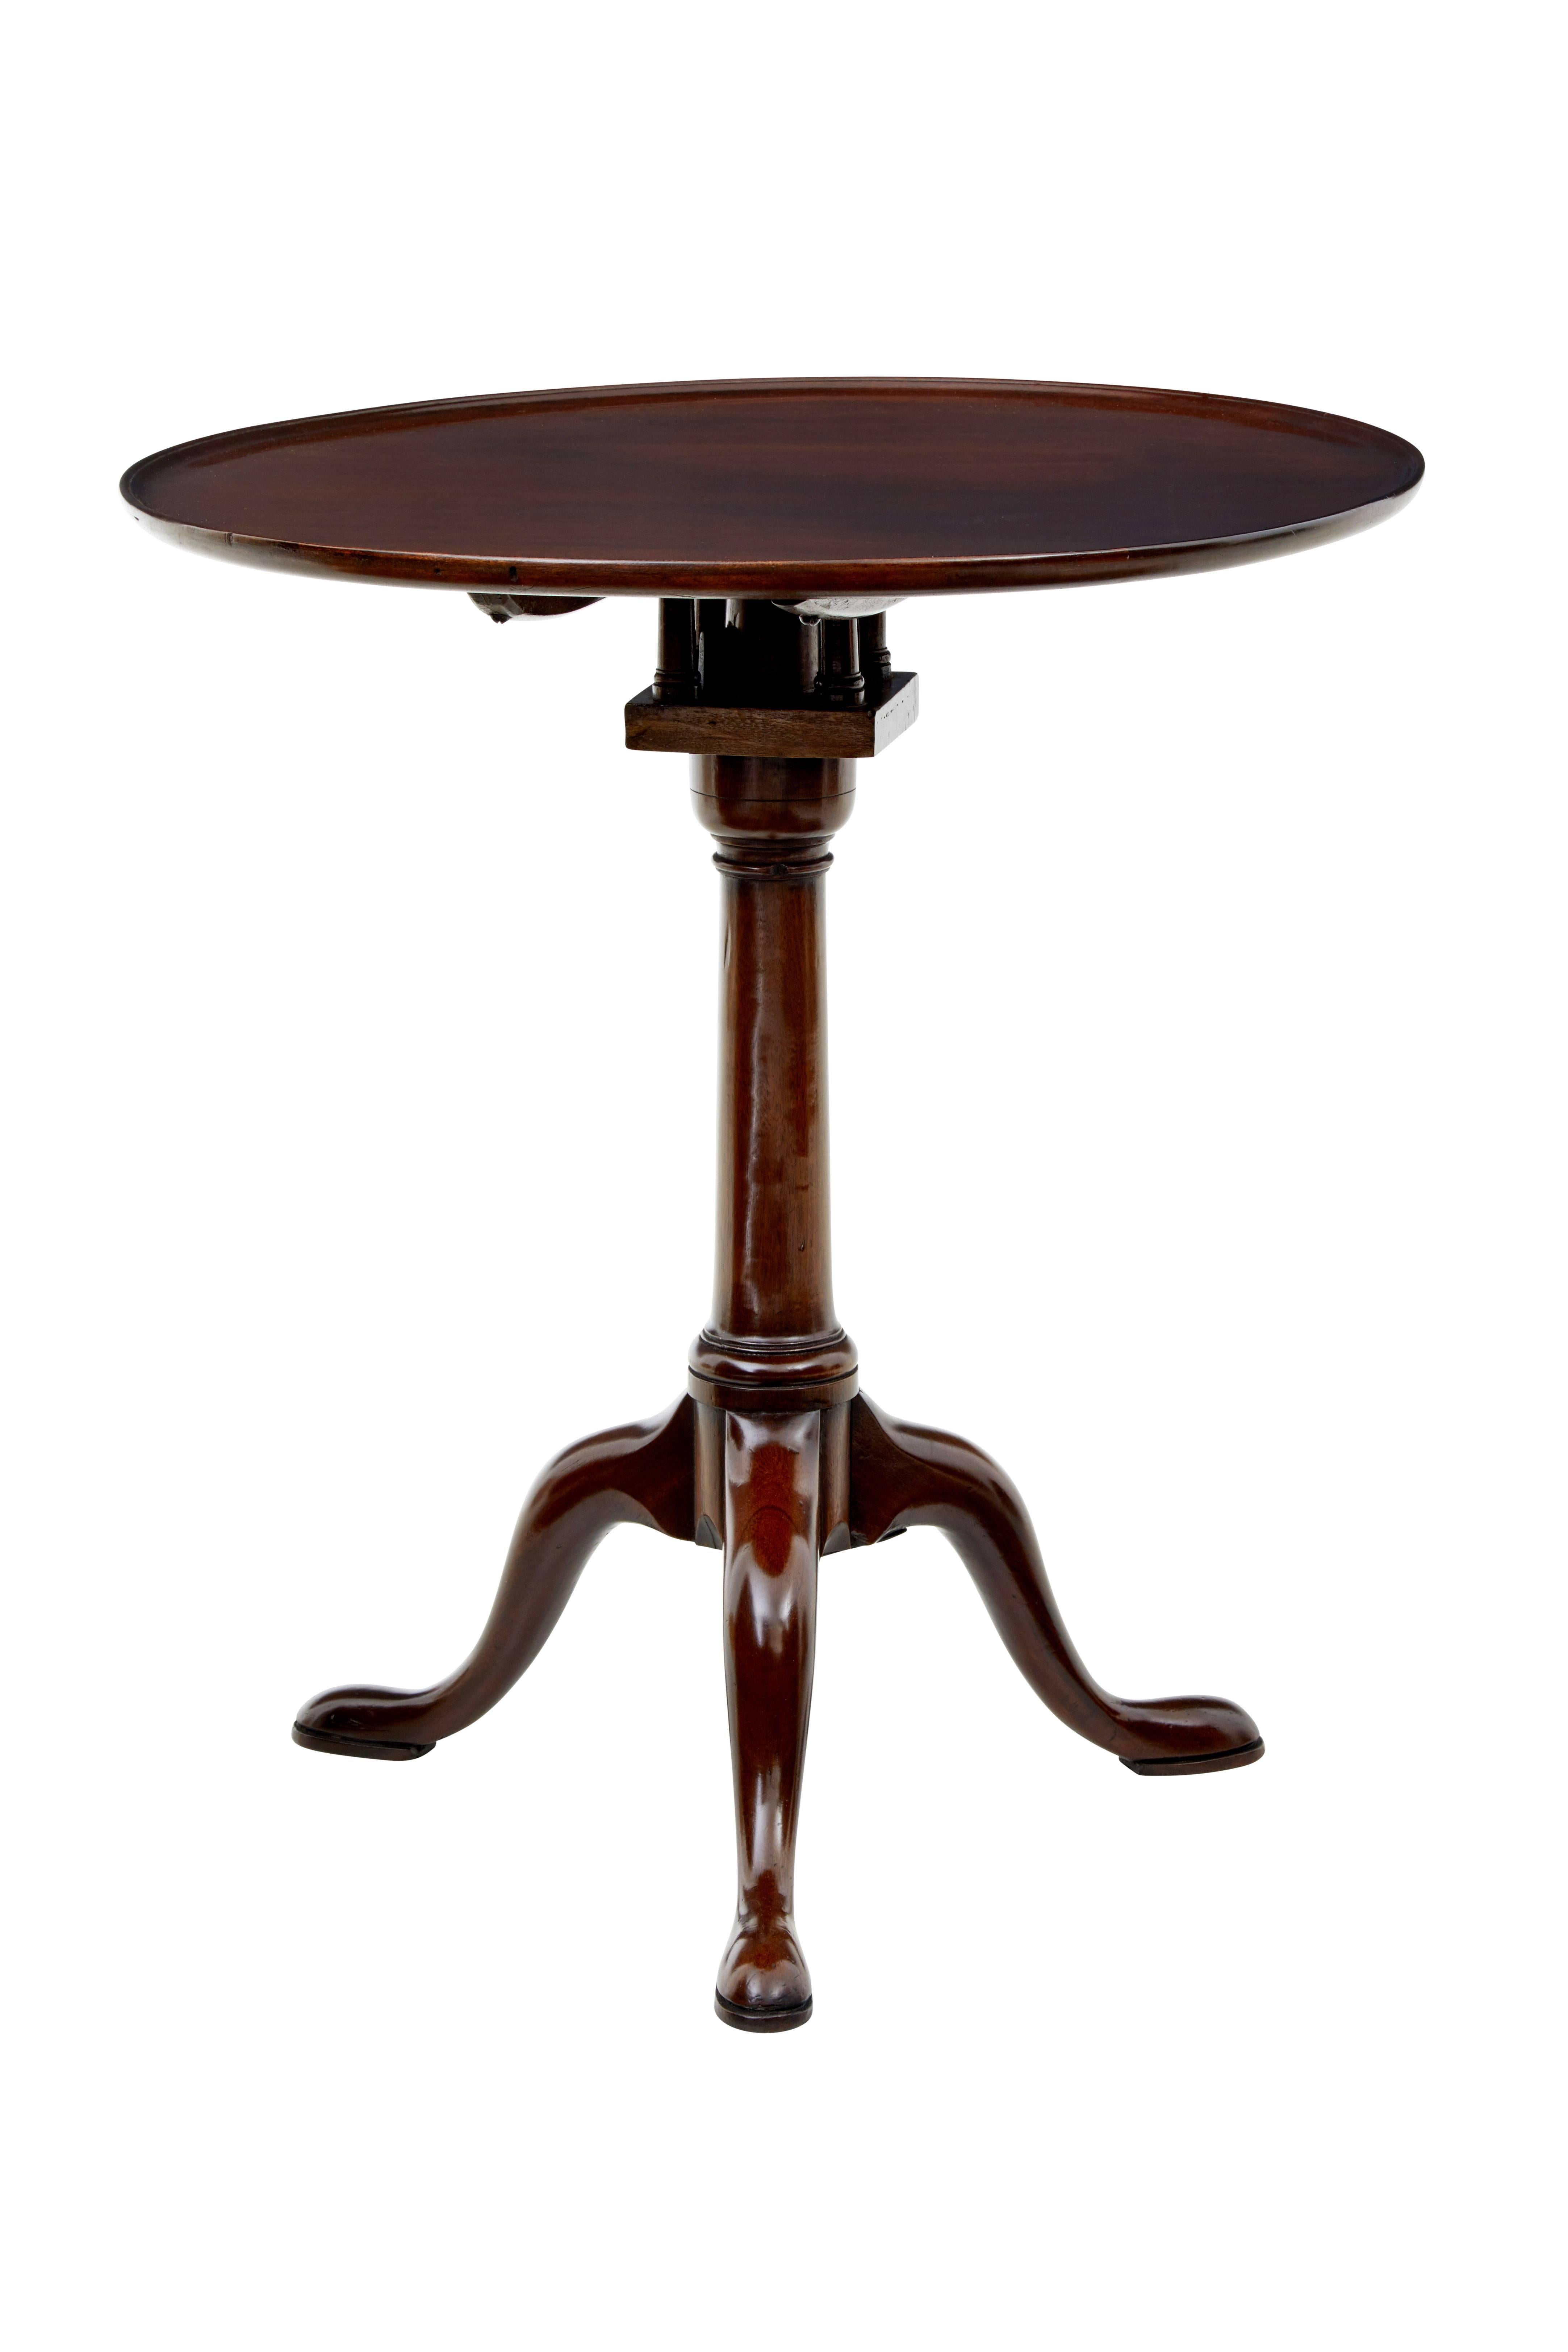 British Early 19th Century Georgian Mahogany Tripod Table